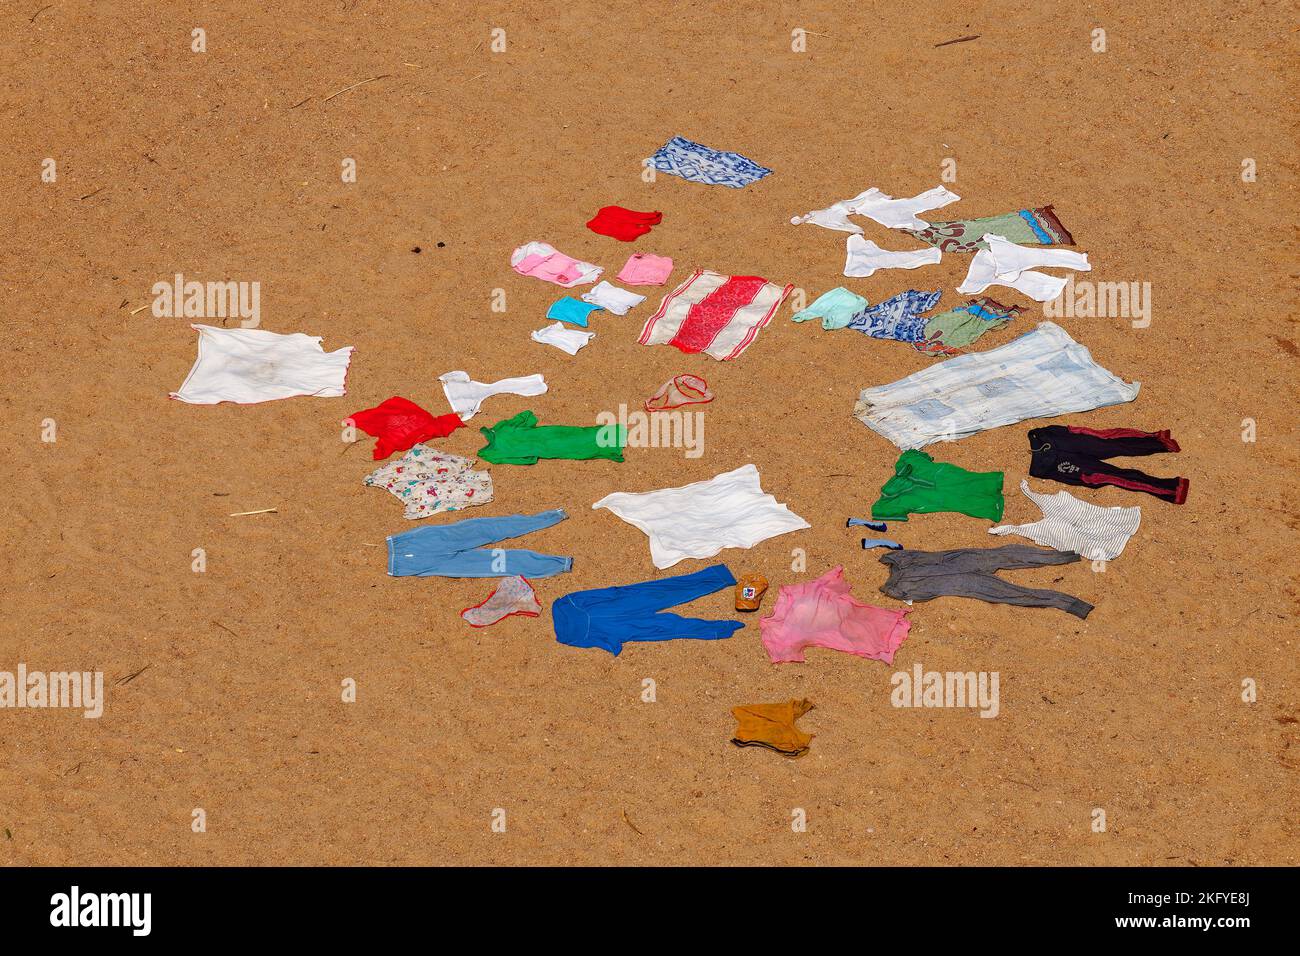 Secado de la ropa de colores lavados en el suelo arenoso y caliente sol africano, escena típica de la campiña africana. PIN rojo, azul, blanco y verde Foto de stock